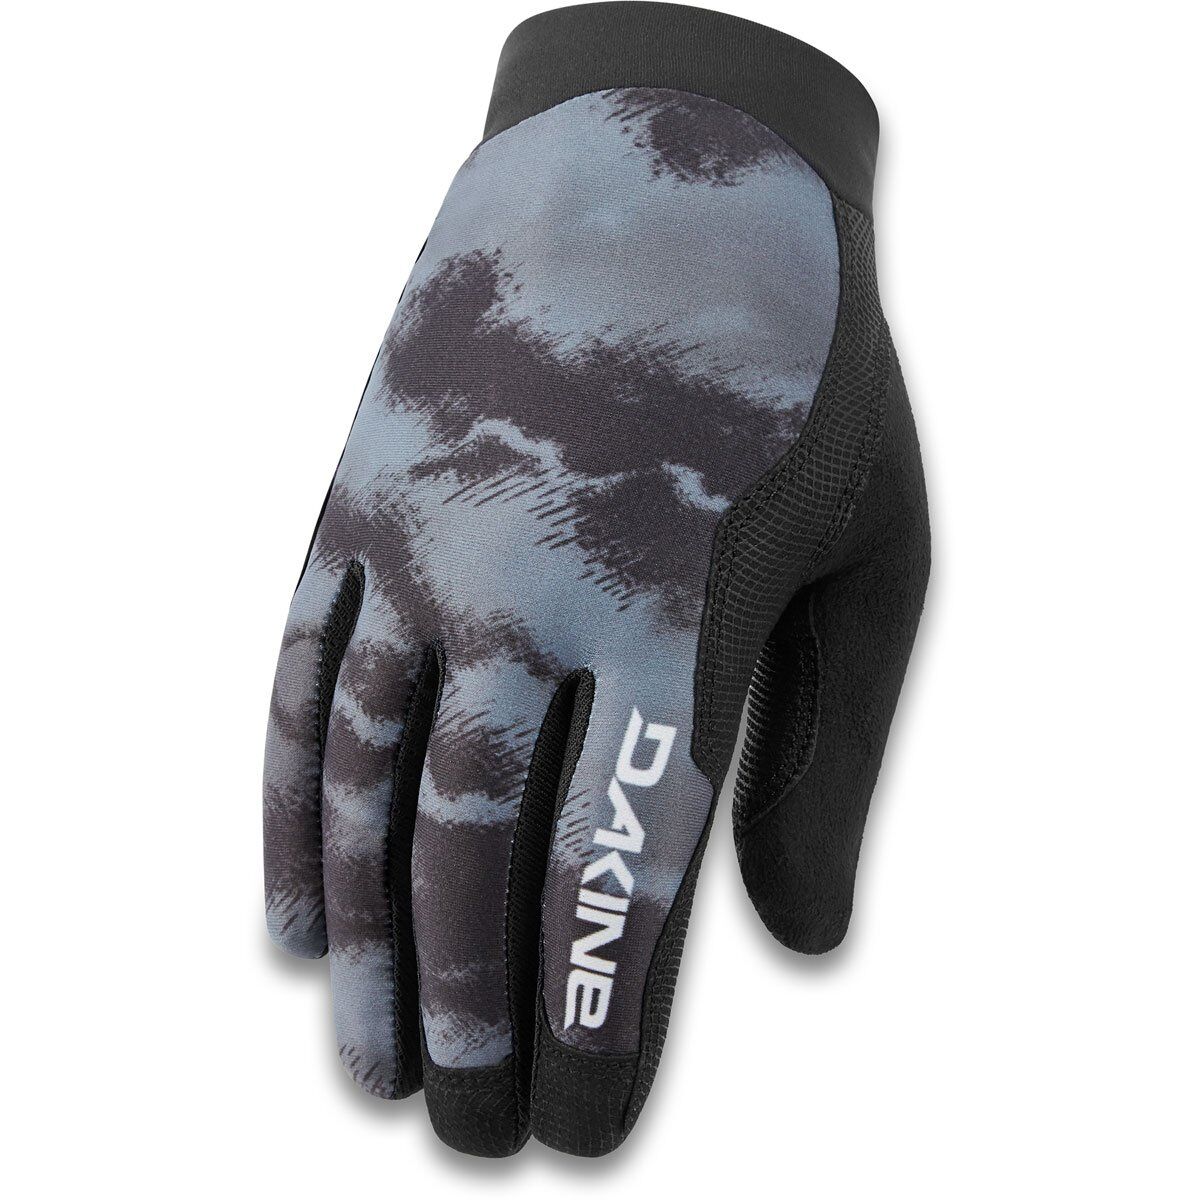 Dakine Thrillium - MTB Gloves - Men's